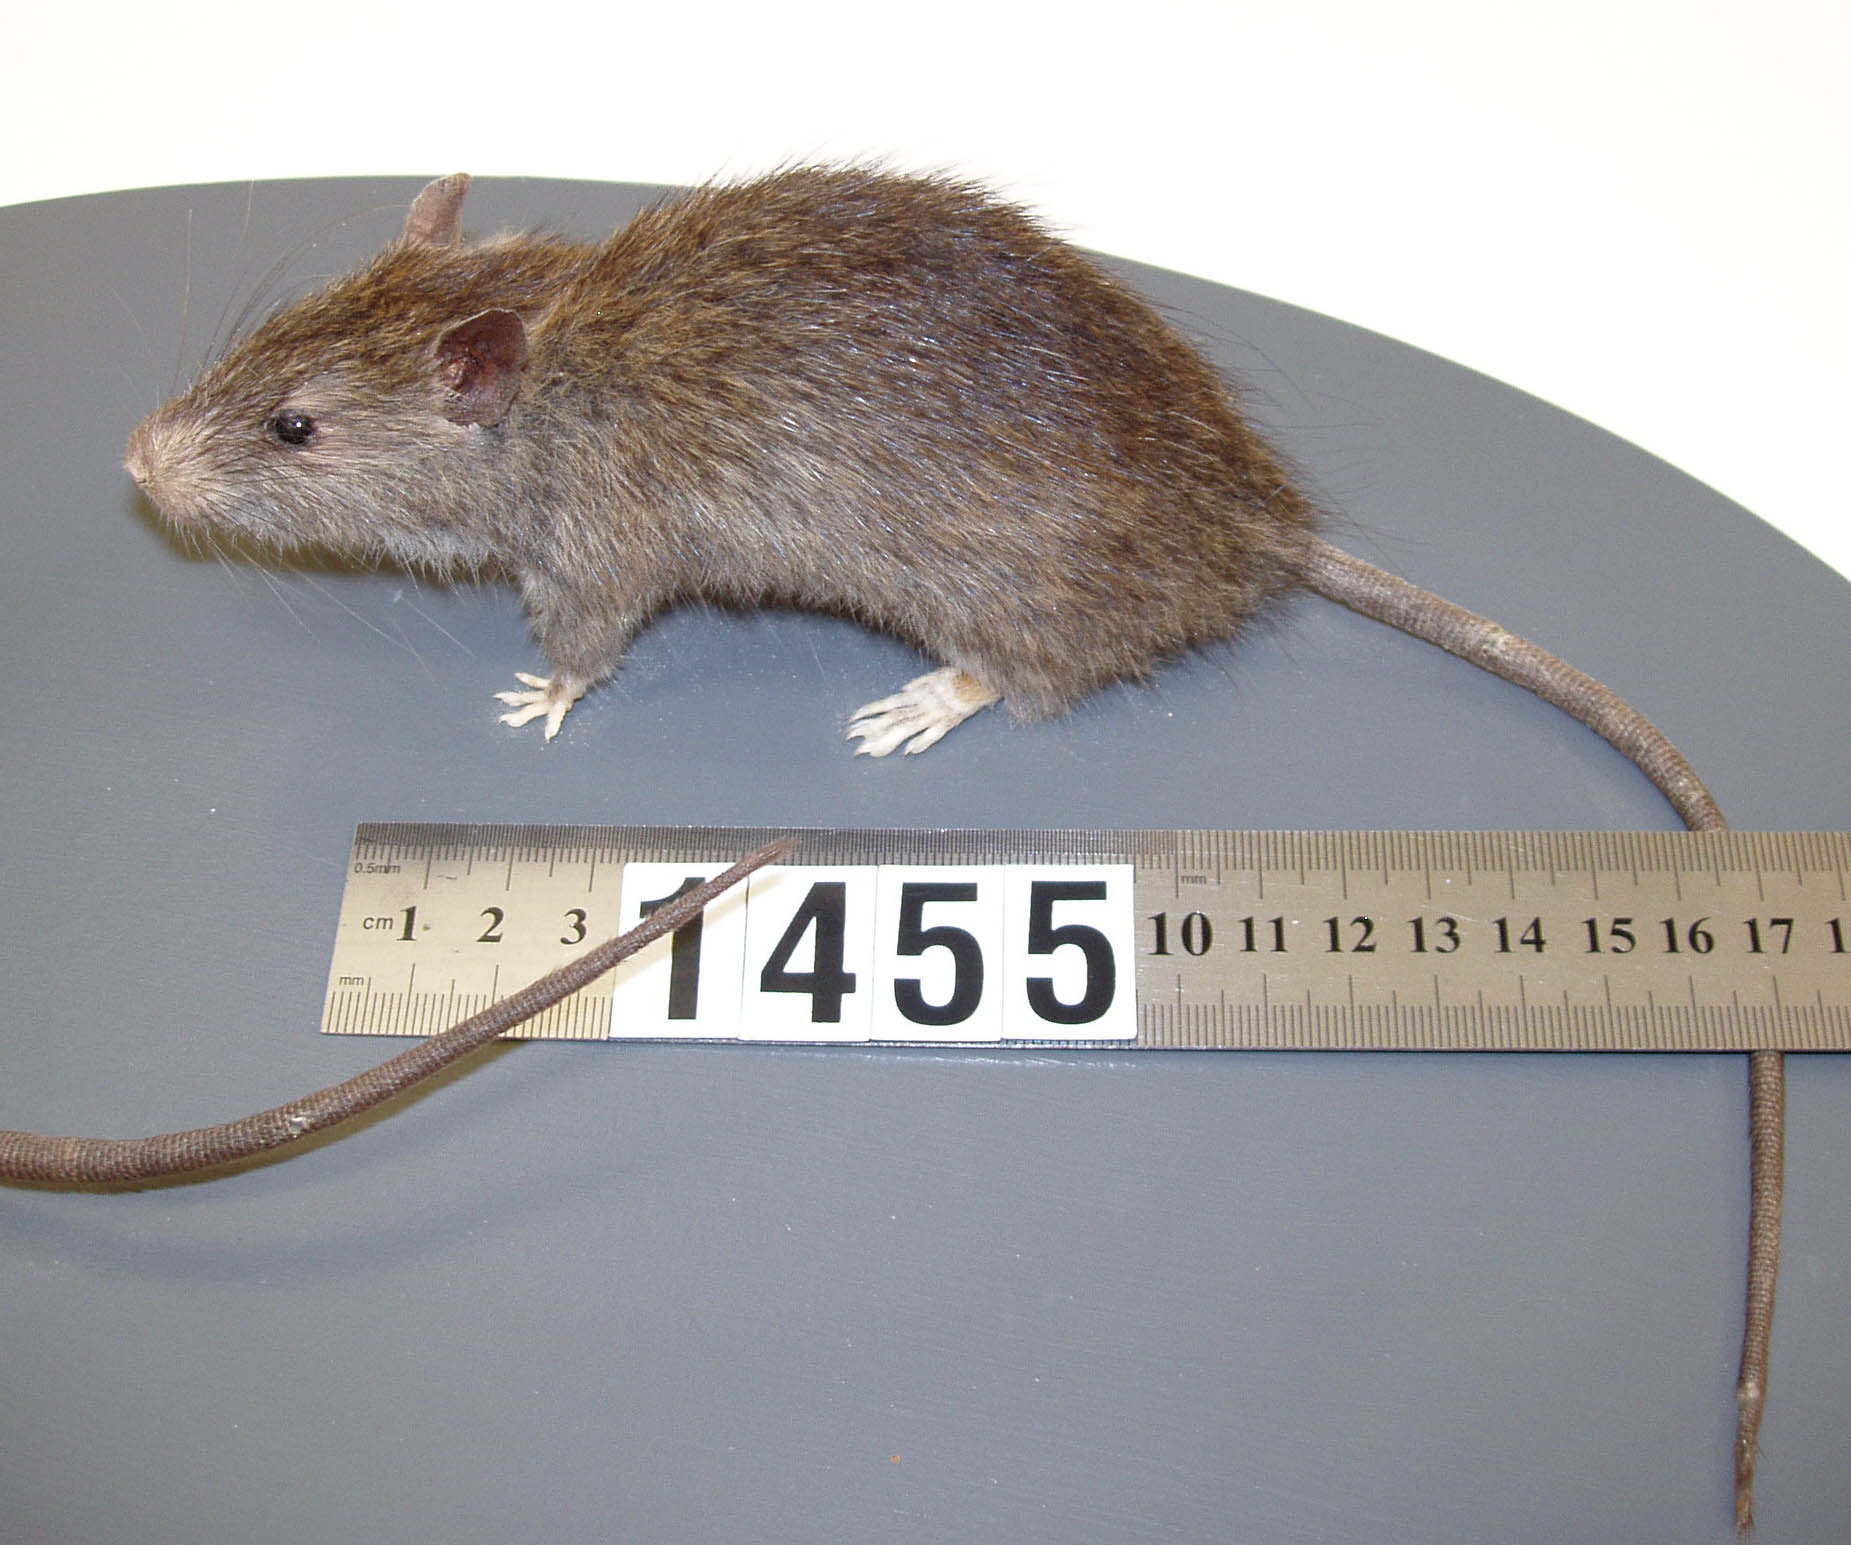 Penjelasan Lengkap Jenis-jenis Tikus Beserta Gambarnya - Alif MH